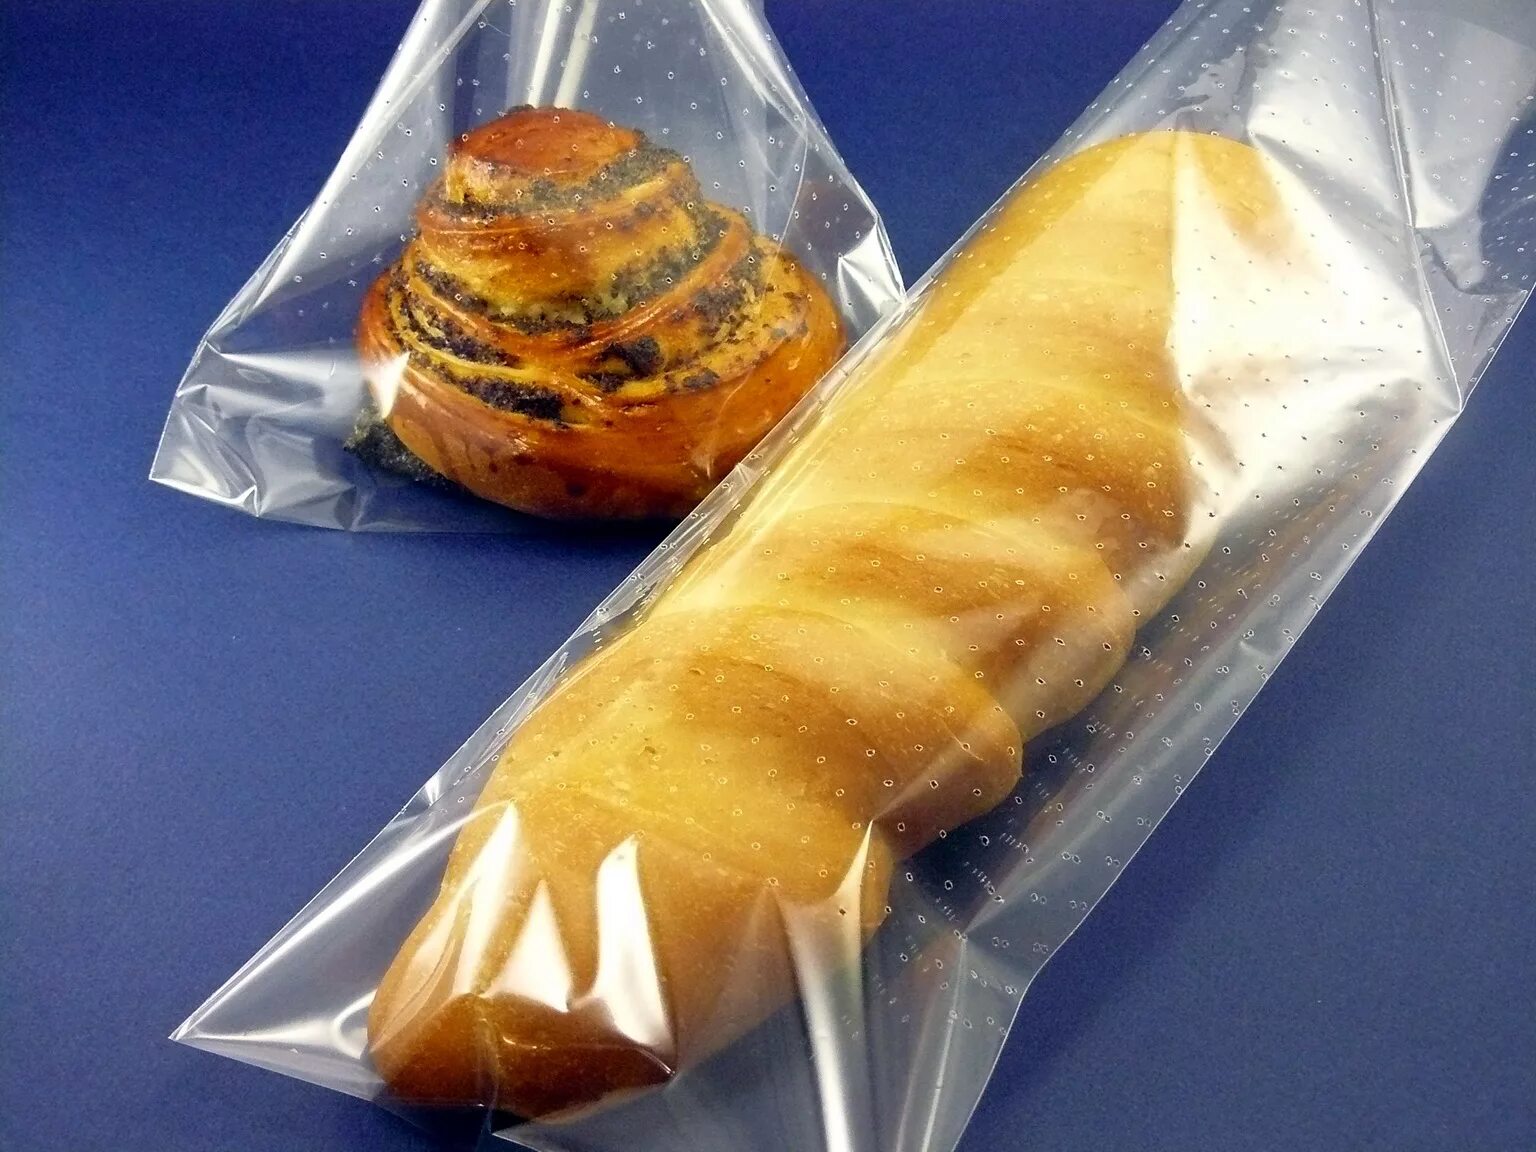 Булочки в пакете. Хлеб в упаковке. Упаковка хлеба в термоусадочную пленку. Упаковка хлеба и хлебобулочных изделий. Пакет булочки